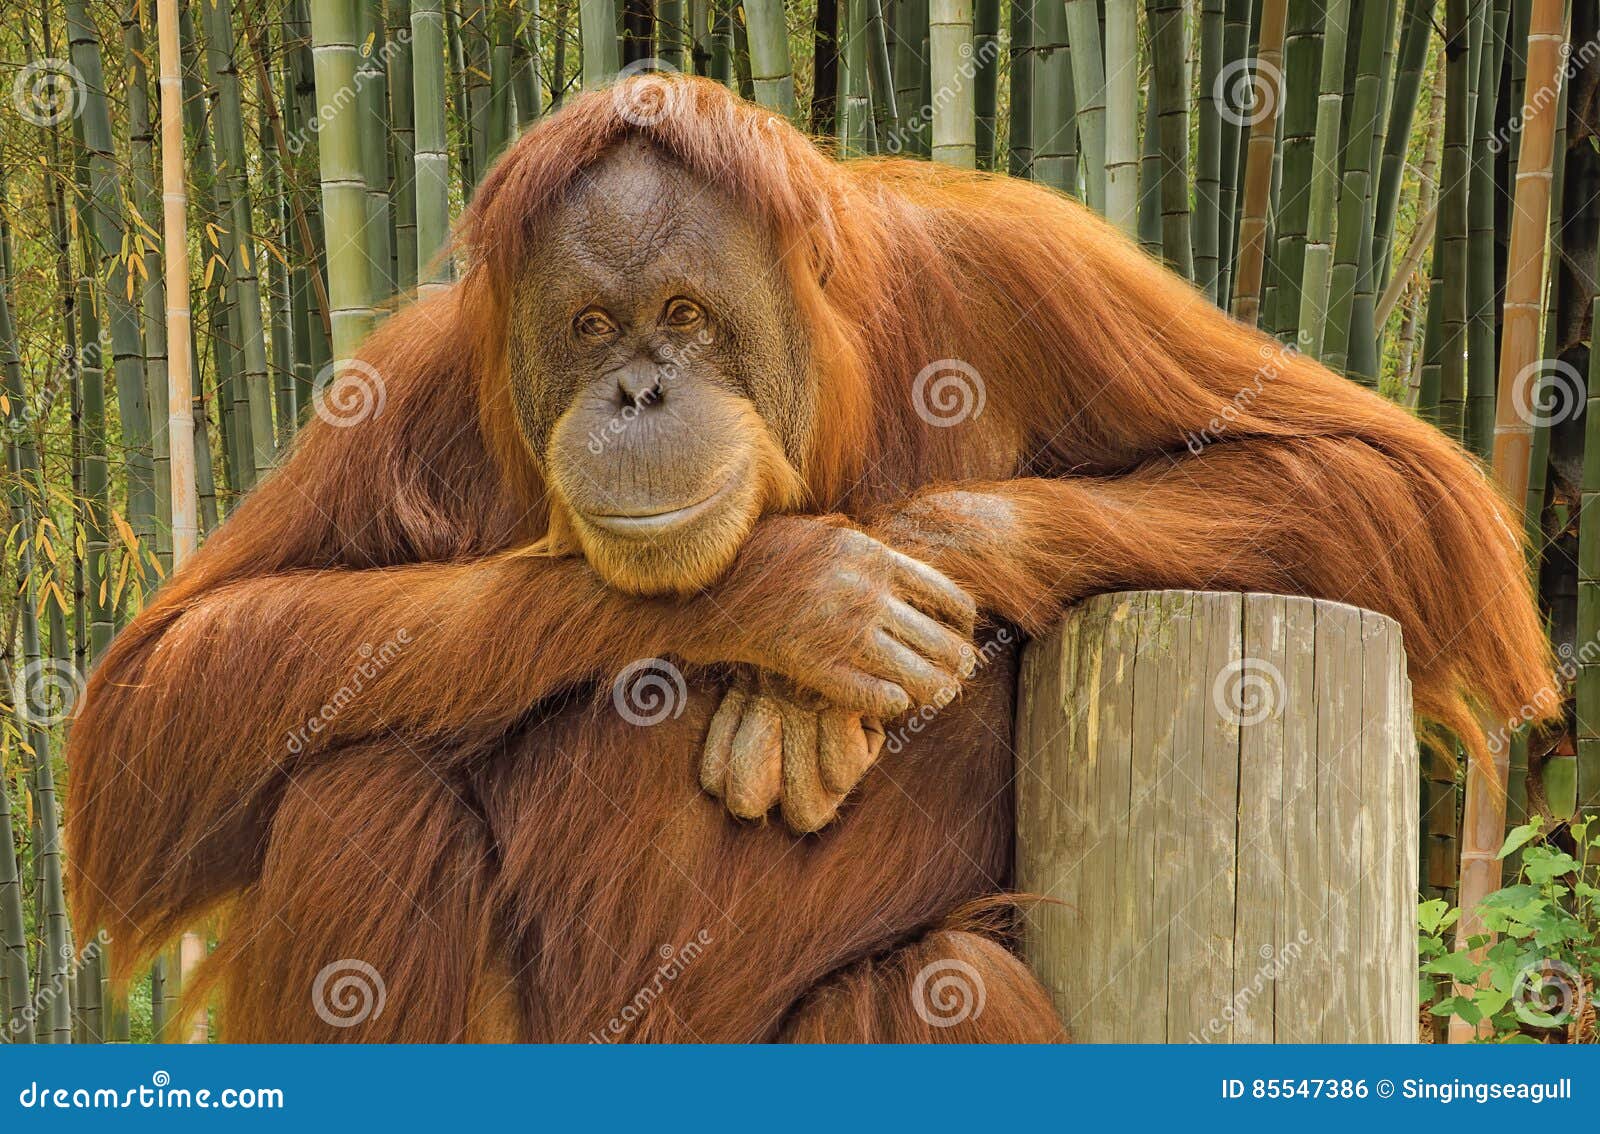 orangutan portrait.